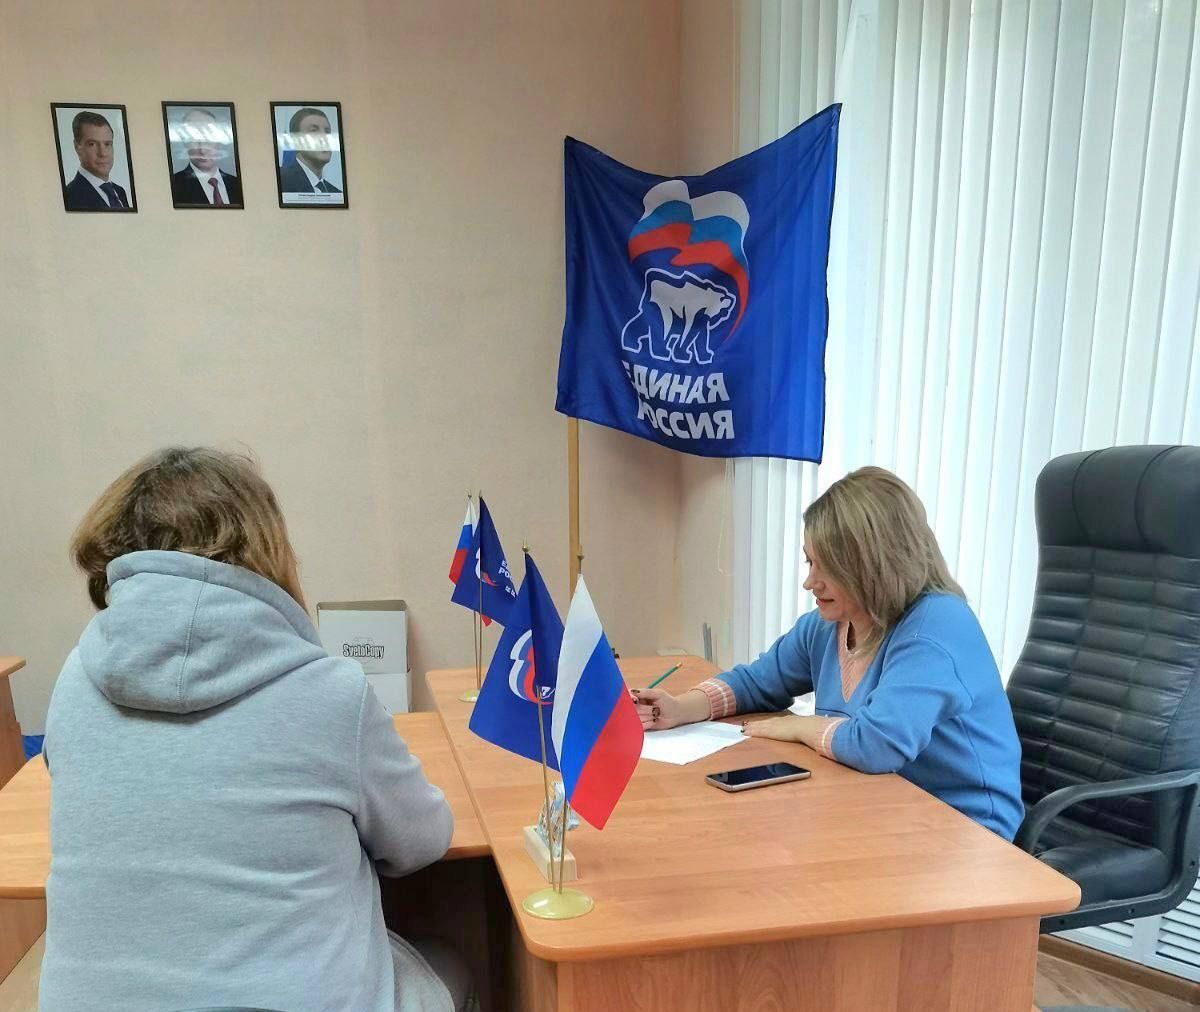 Более 1200 жителей Ульяновской области получили бесплатную юридическую помощь